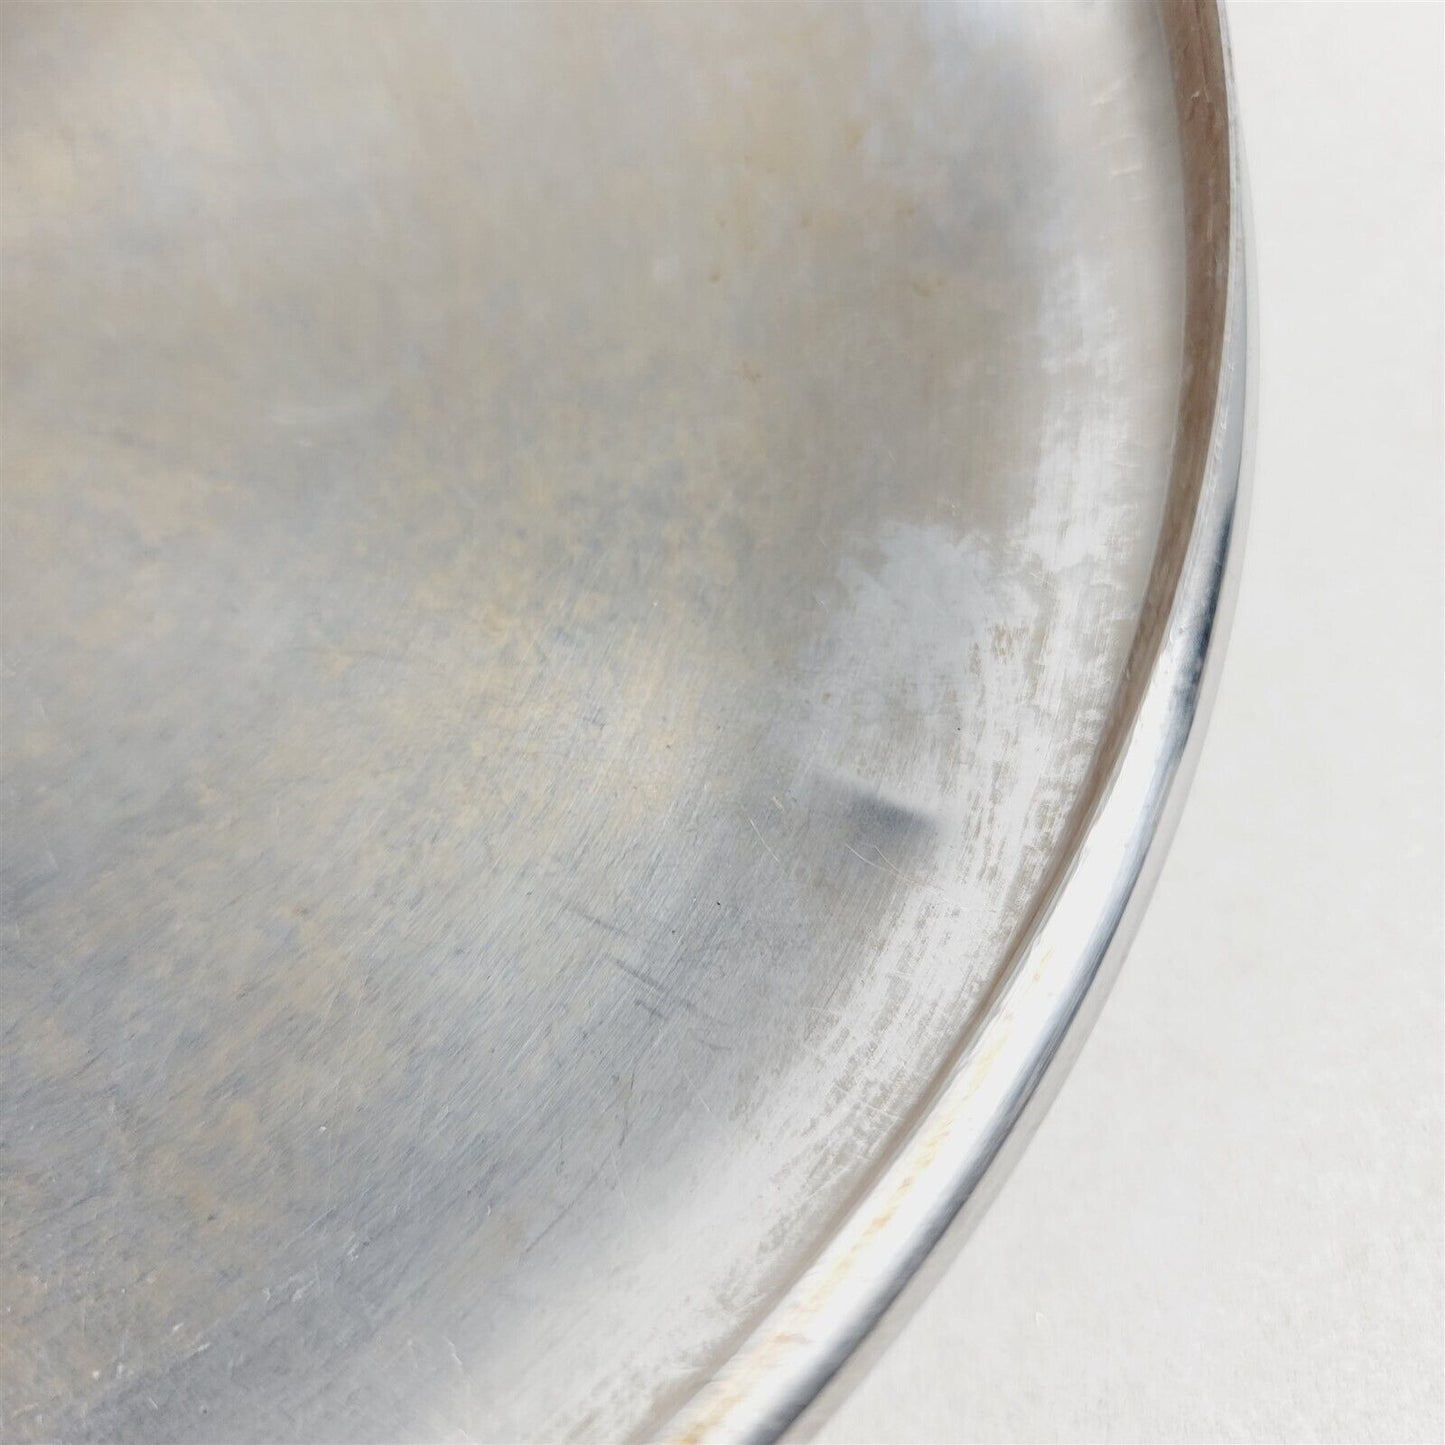 2 Vintage Revereware Pot Pan Replacement Lids 6" & 7"